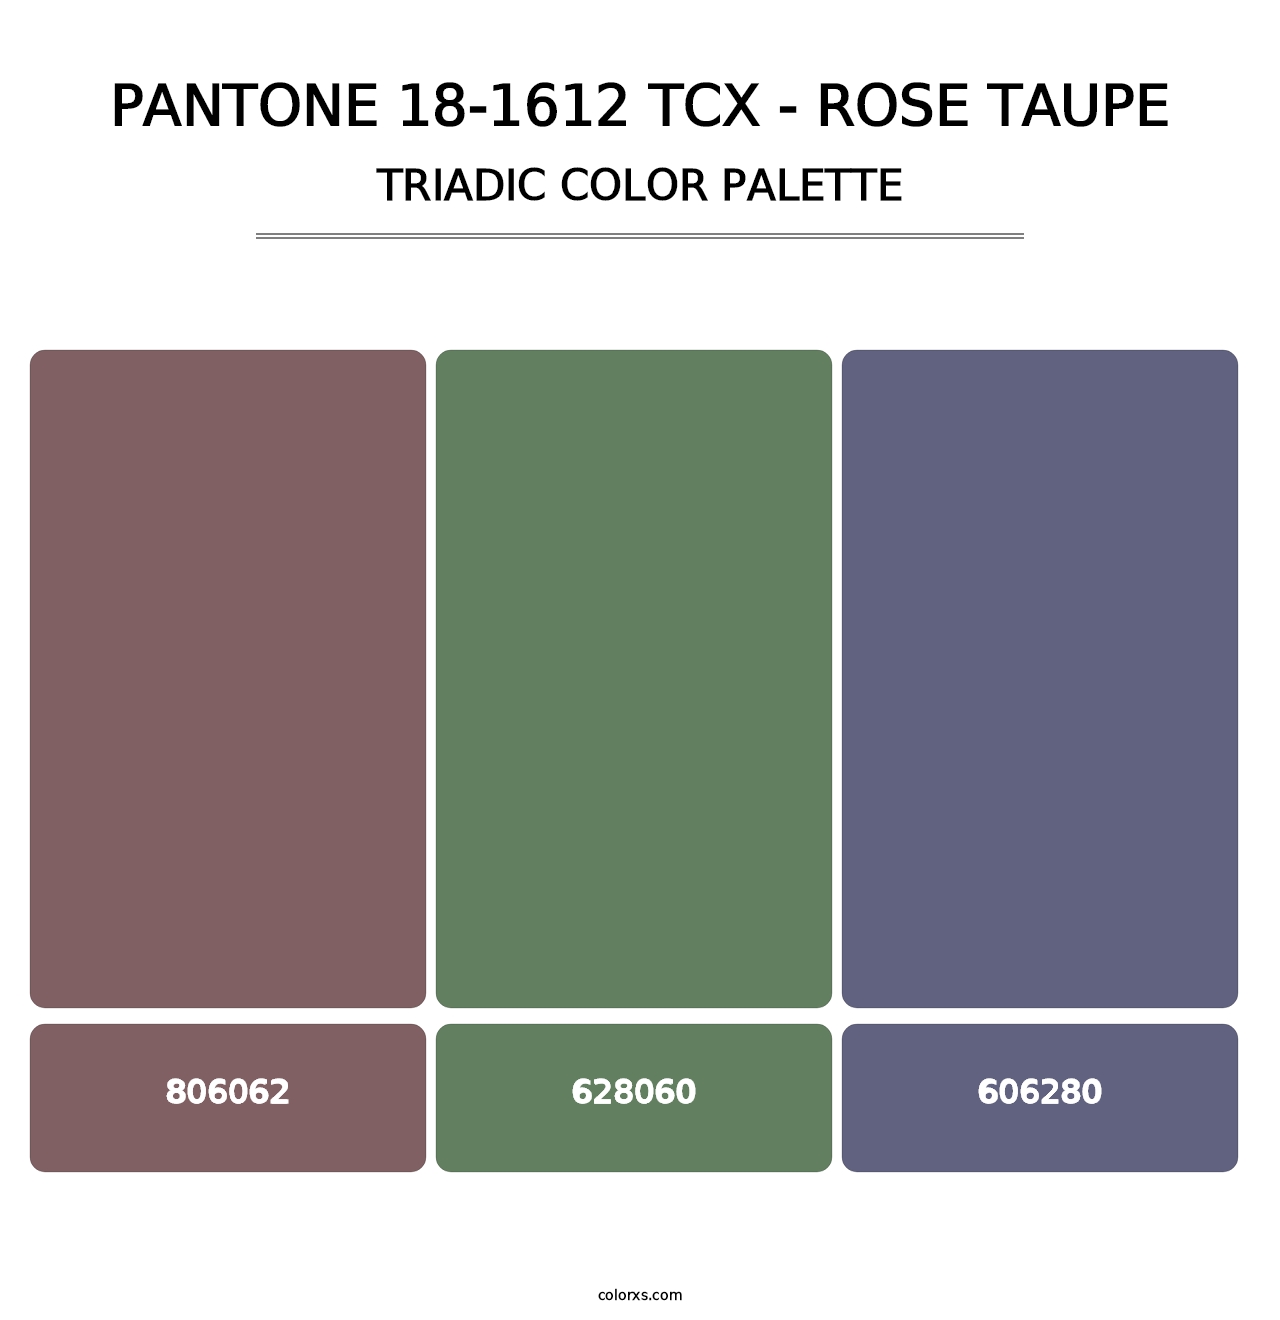 PANTONE 18-1612 TCX - Rose Taupe - Triadic Color Palette